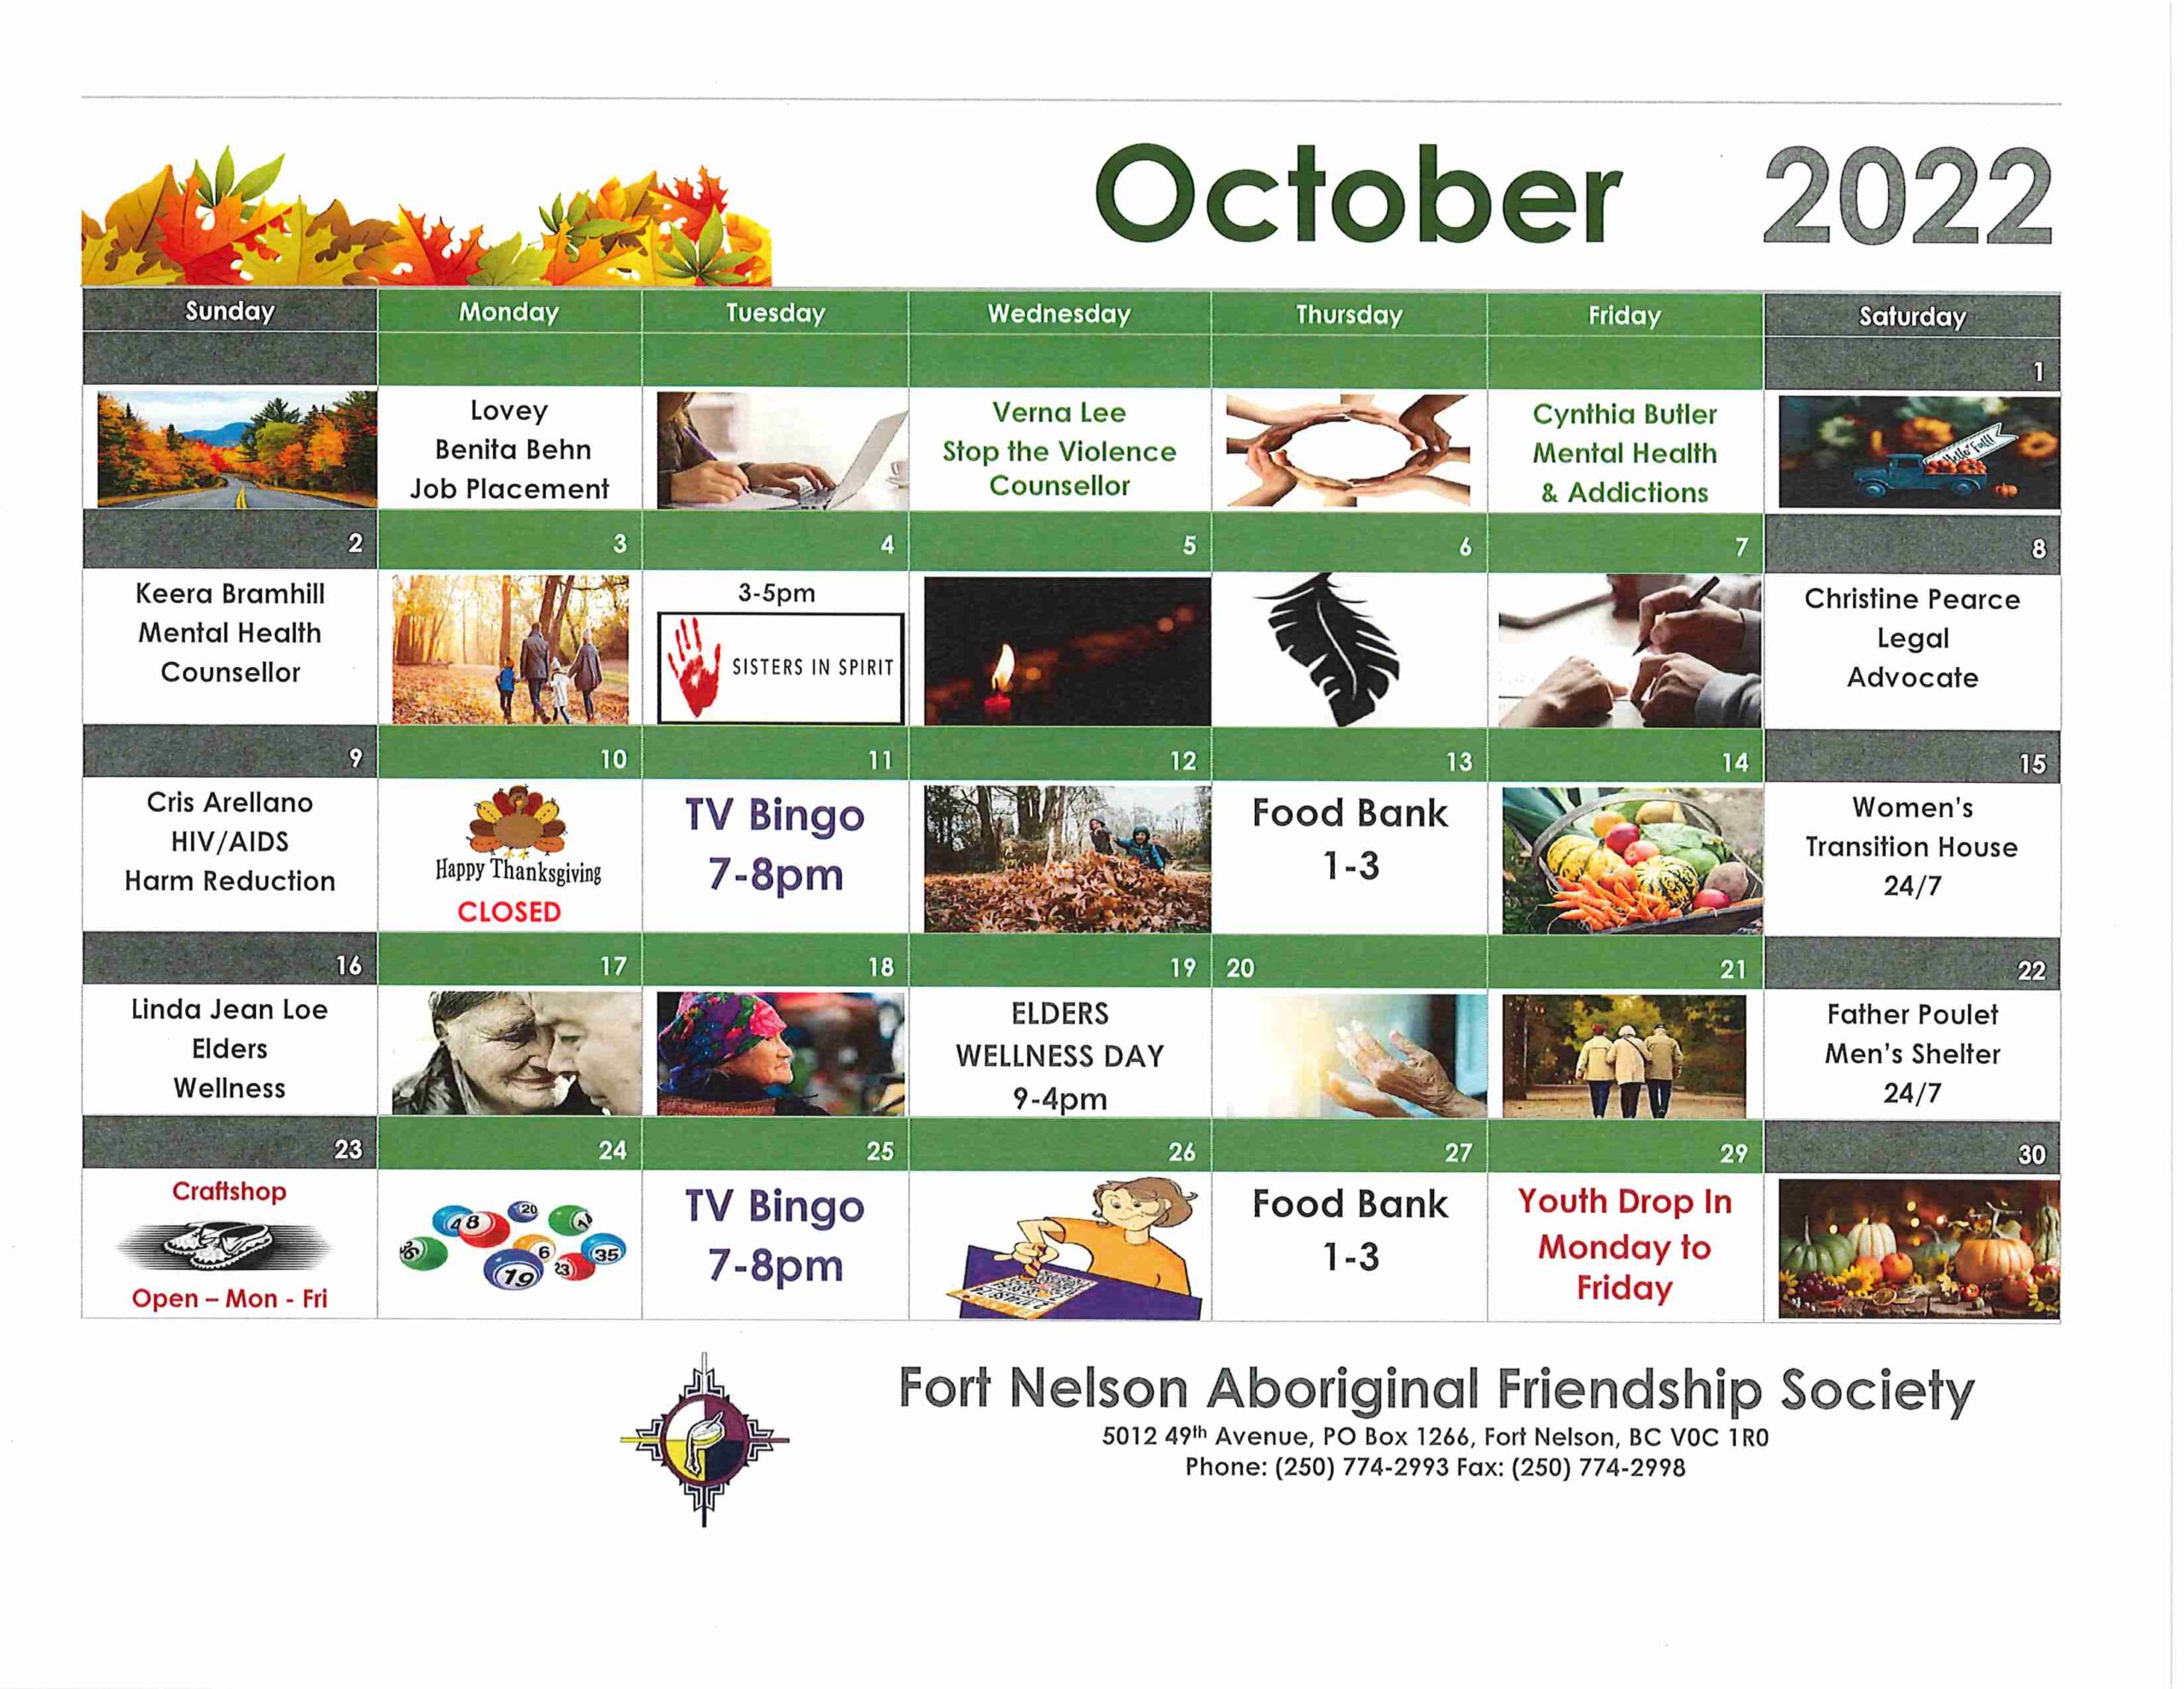 FNAFS Calendar - October 2022